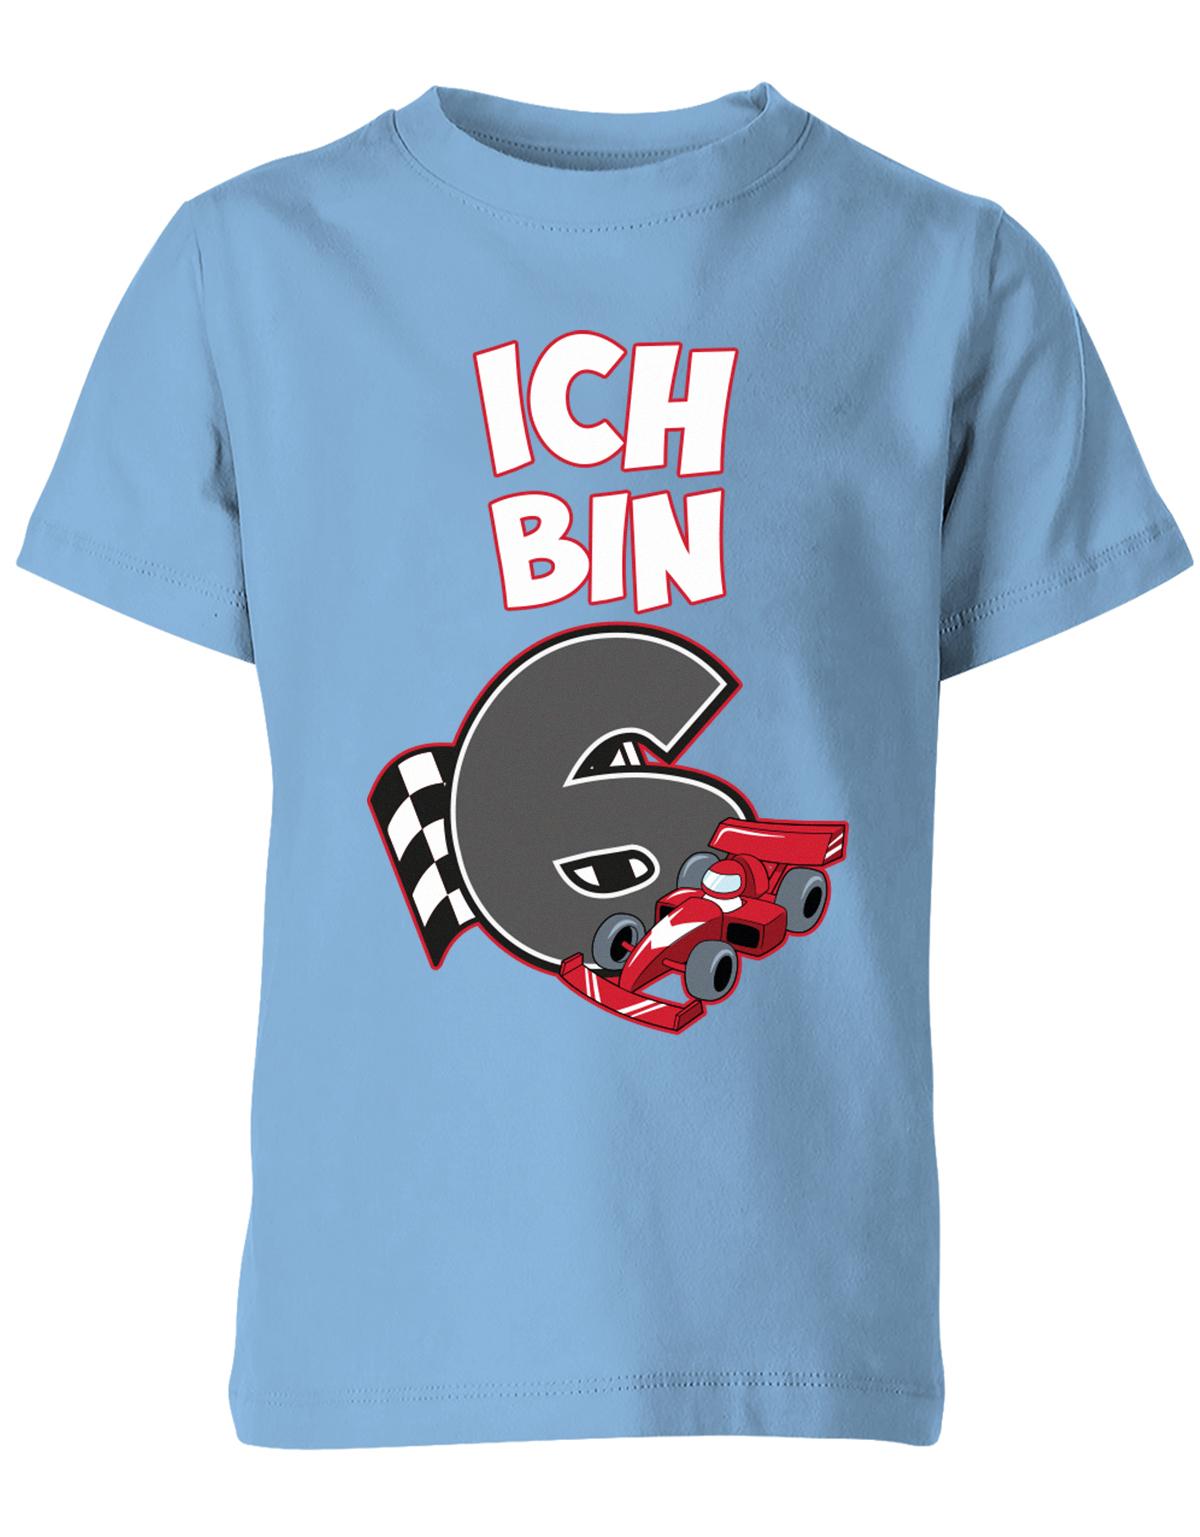 ich-bin-6-autorennen-rennwagen-geburtstag-rennfahrer-kinder-shirt-hellblau